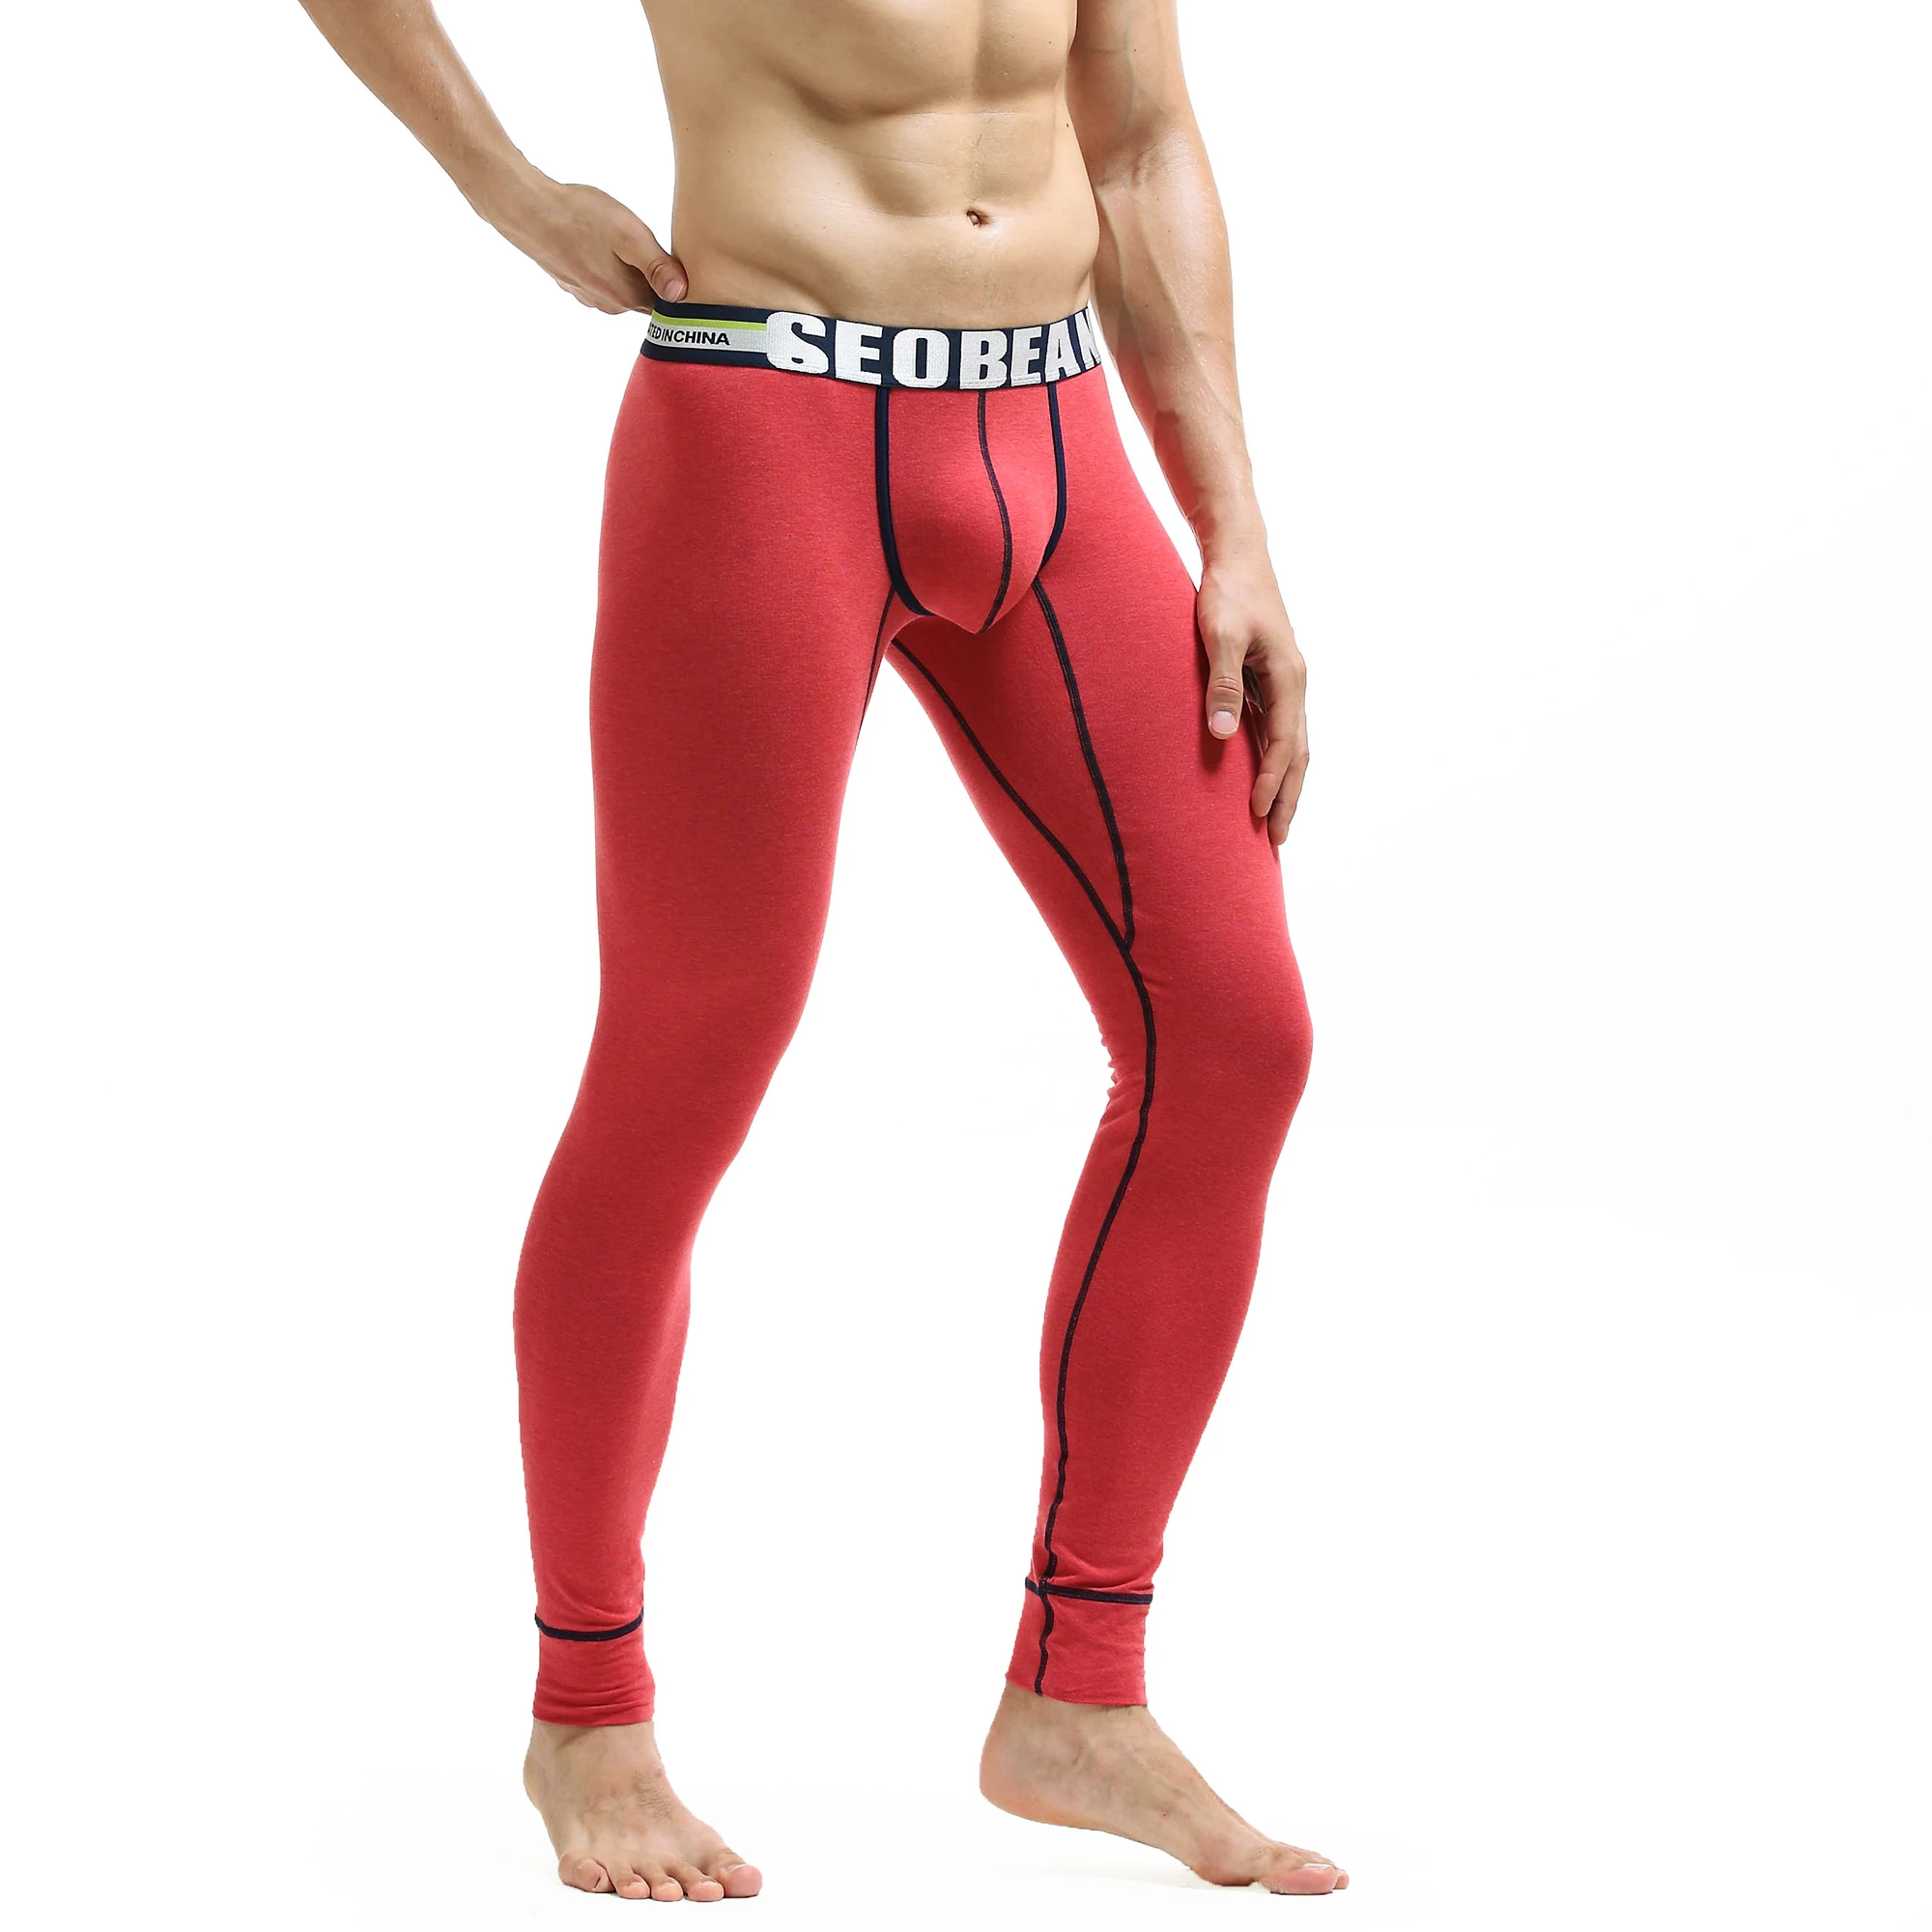 SEOBEAN, мужские осенние штаны, модные одноцветные леггинсы, низкая талия, U-pouch, сумка, пуш-ап, мужское термобелье, низ - Цвет: Красный